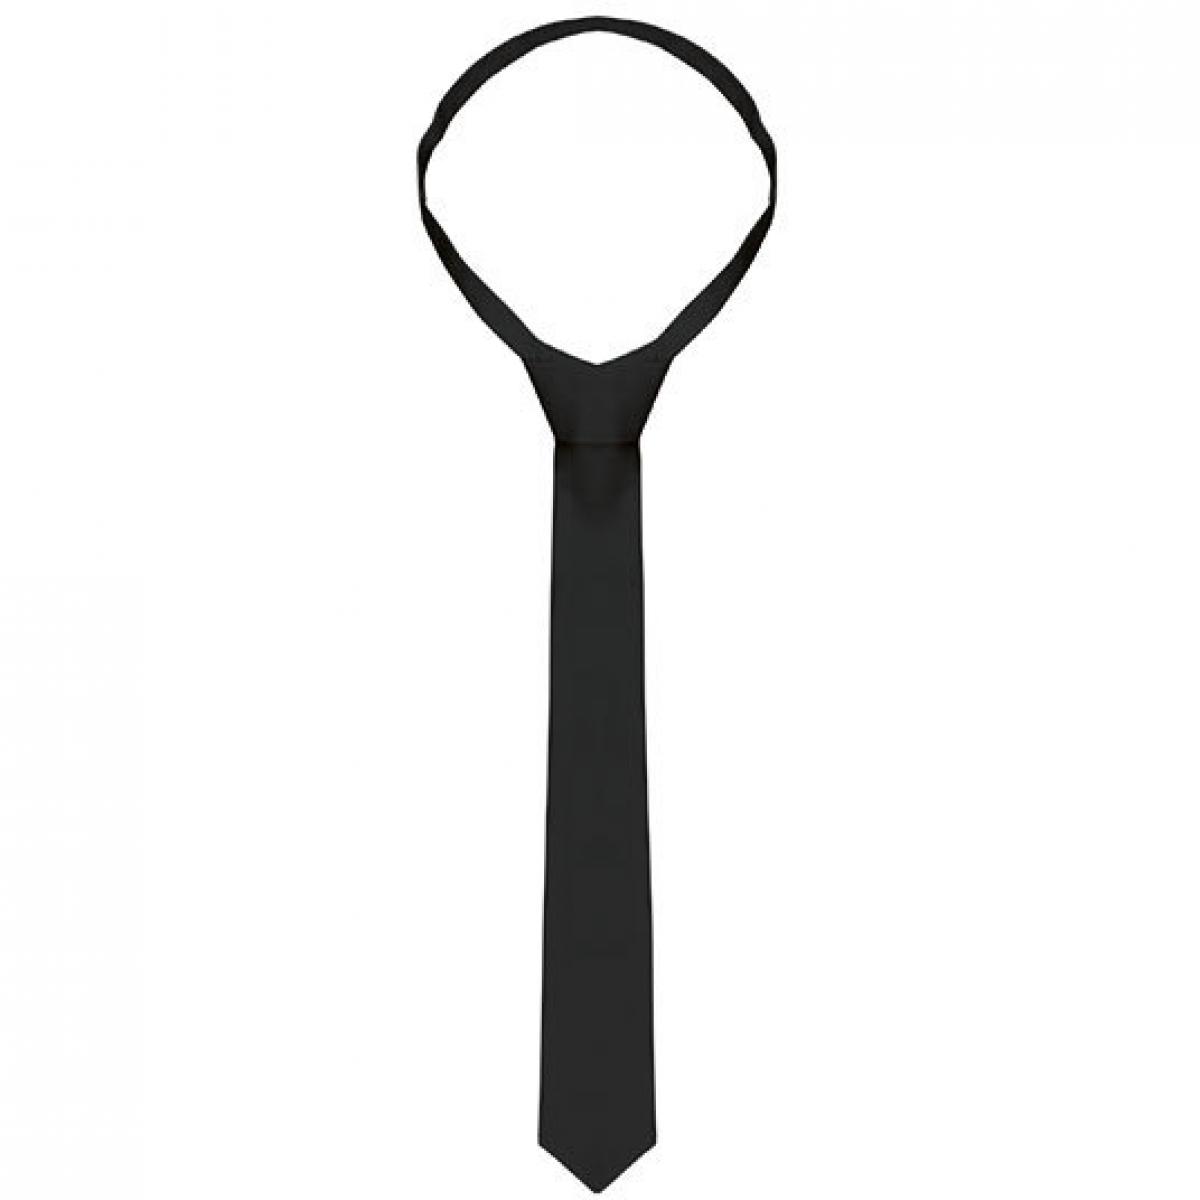 Hersteller: Karlowsky Herstellernummer: AK4 Artikelbezeichnung: Krawatte / 148 x 6,5 cm Farbe: Black (ca. Pantone Black 6 C)